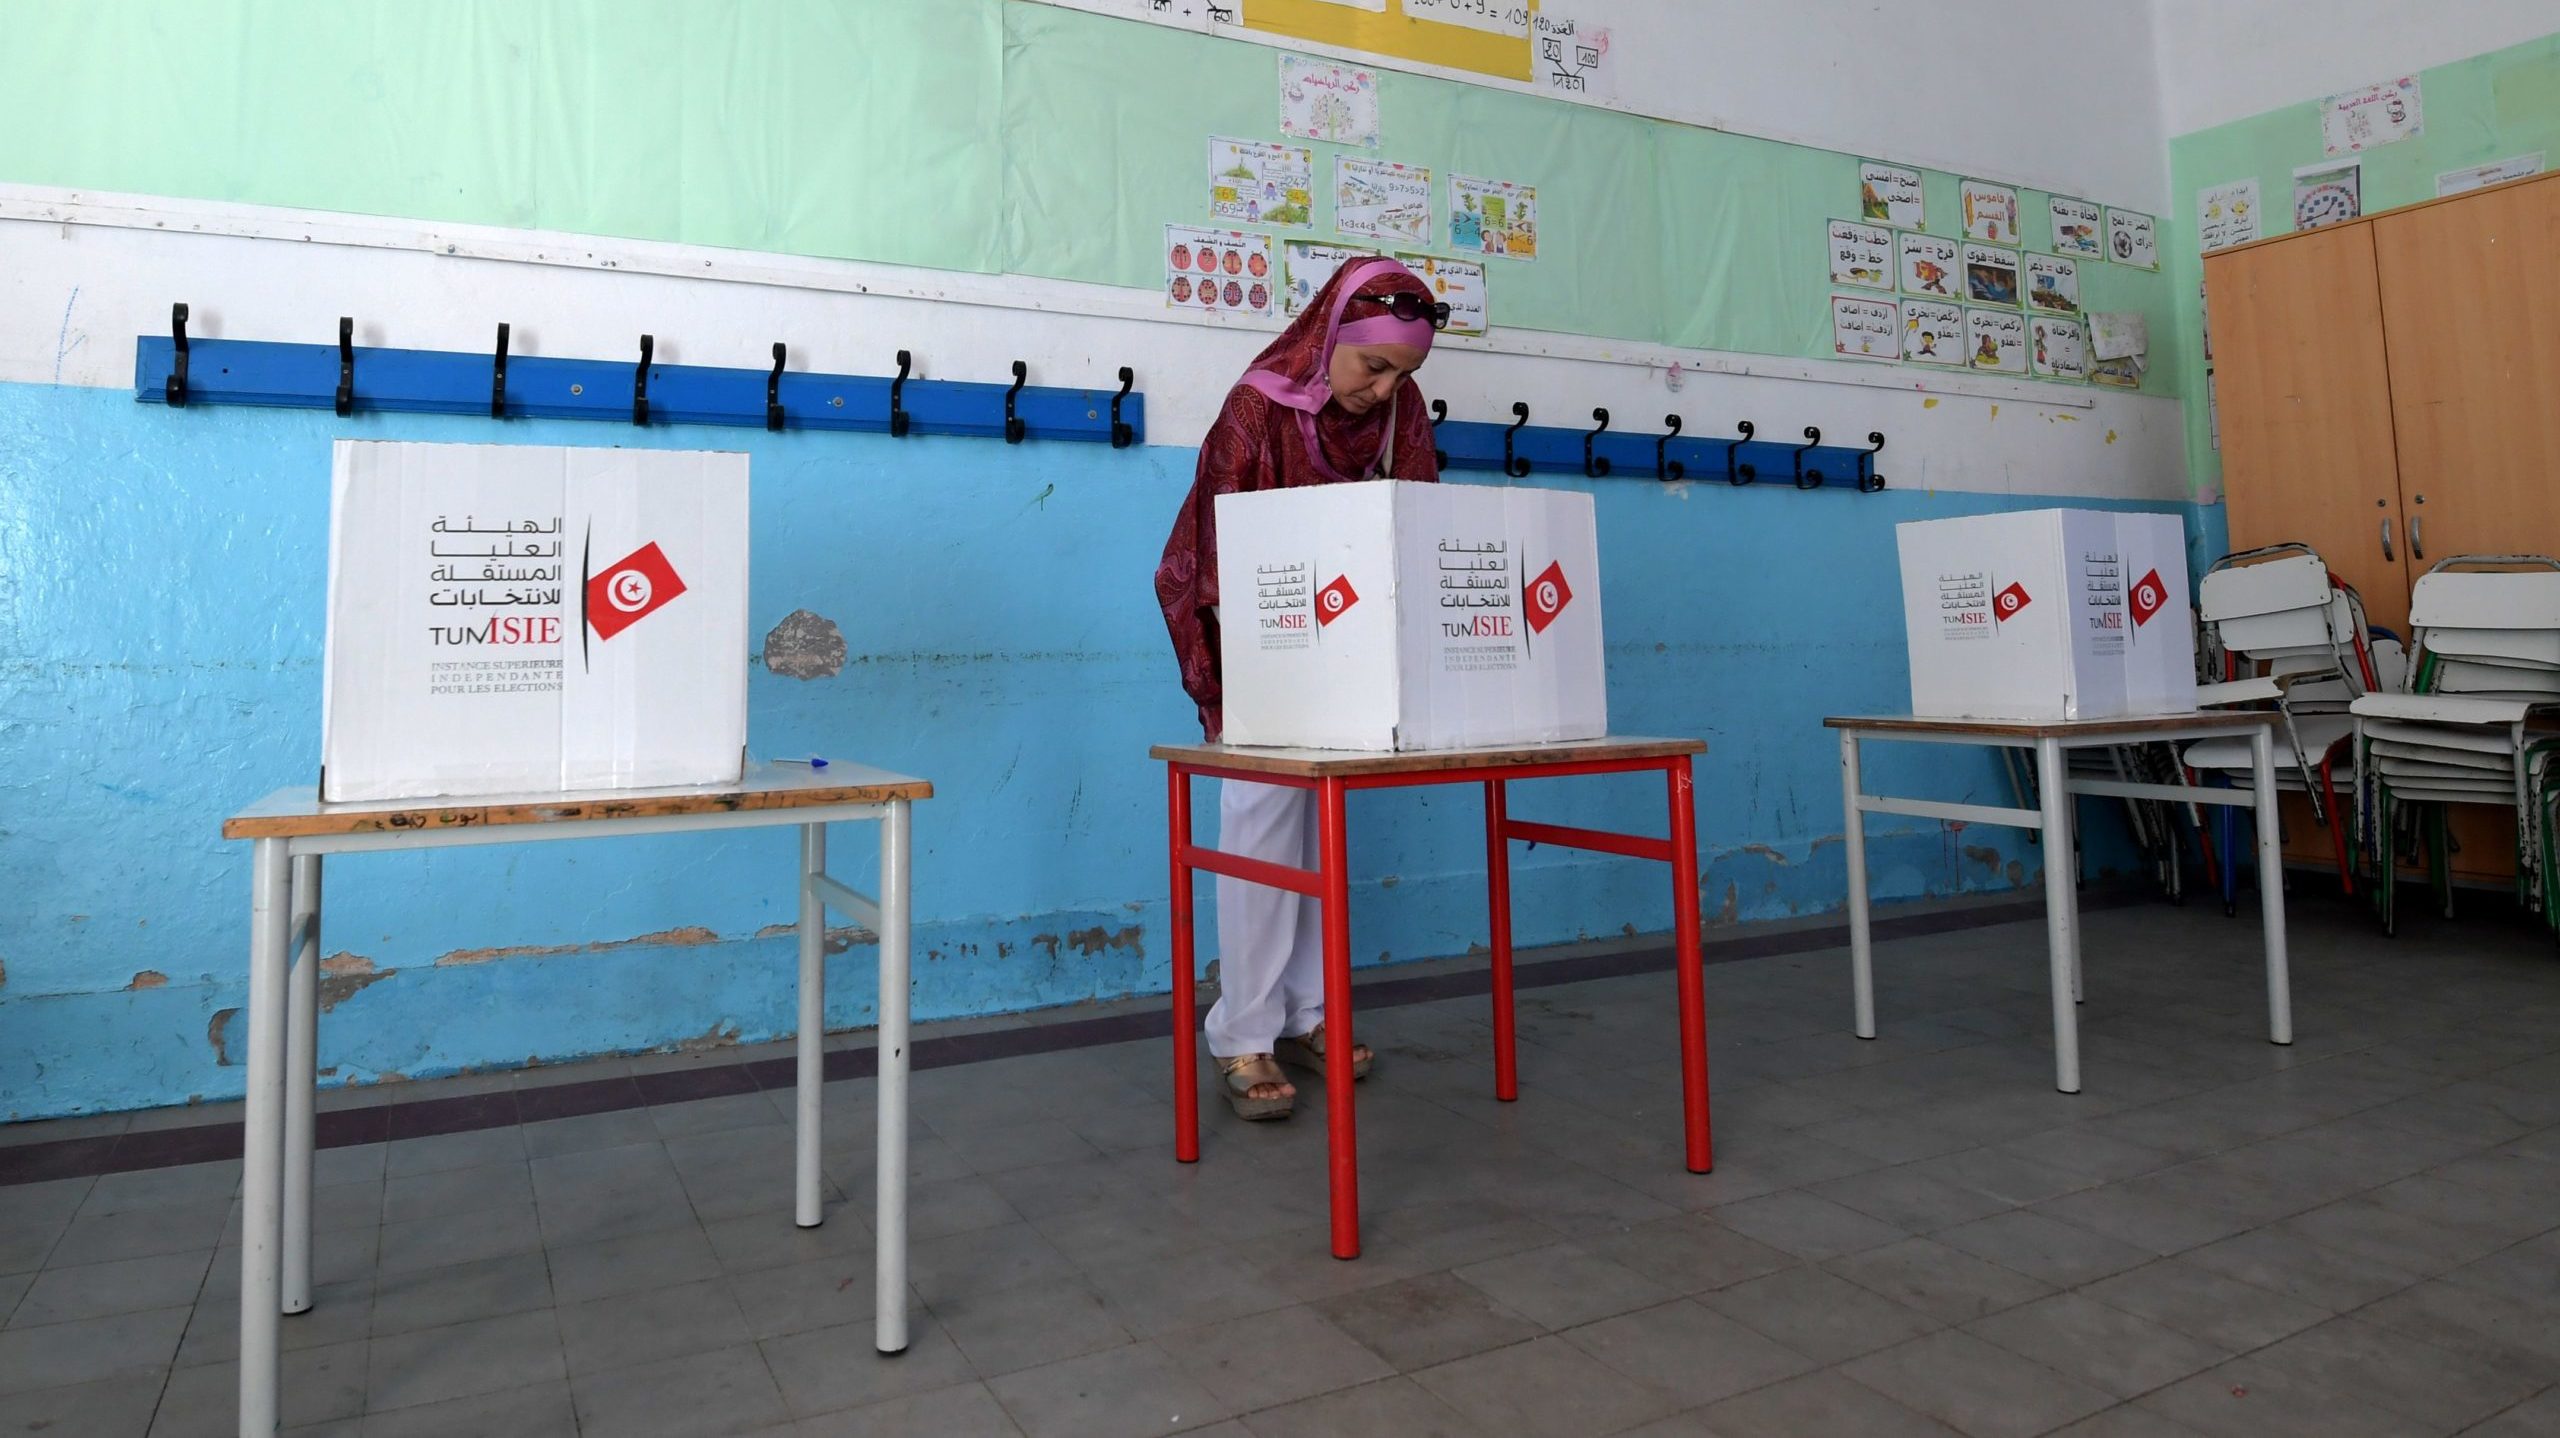 Tunisia’s President Decrees Referendum on New Constitution